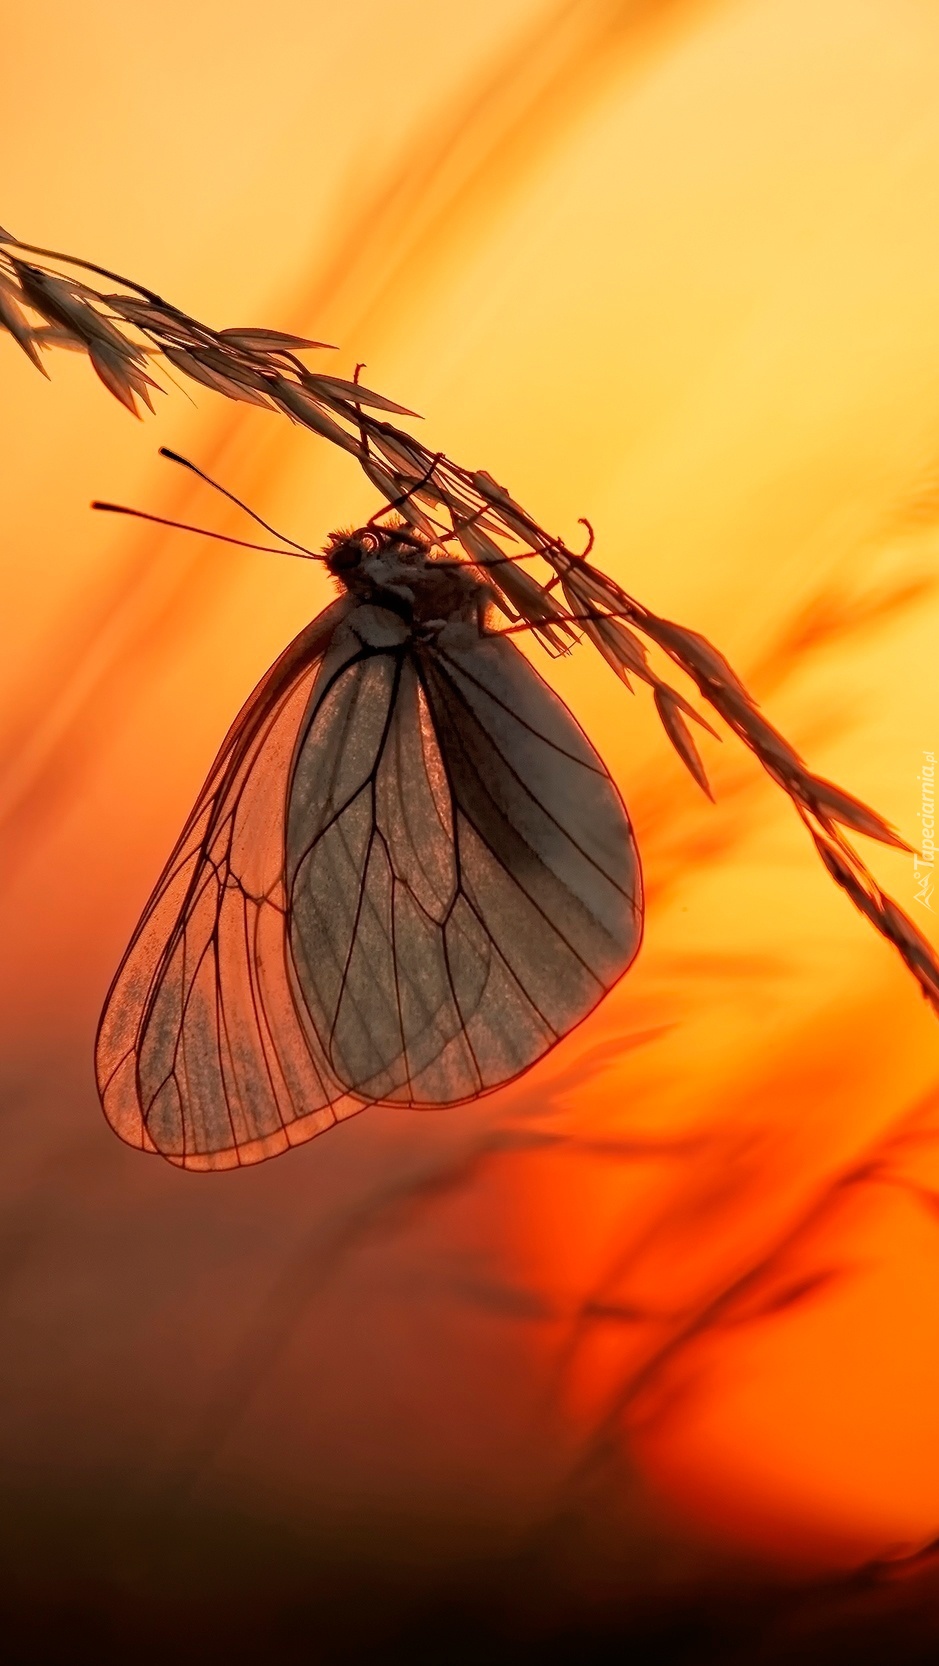 Motyl trzymający się pochyłej trawy